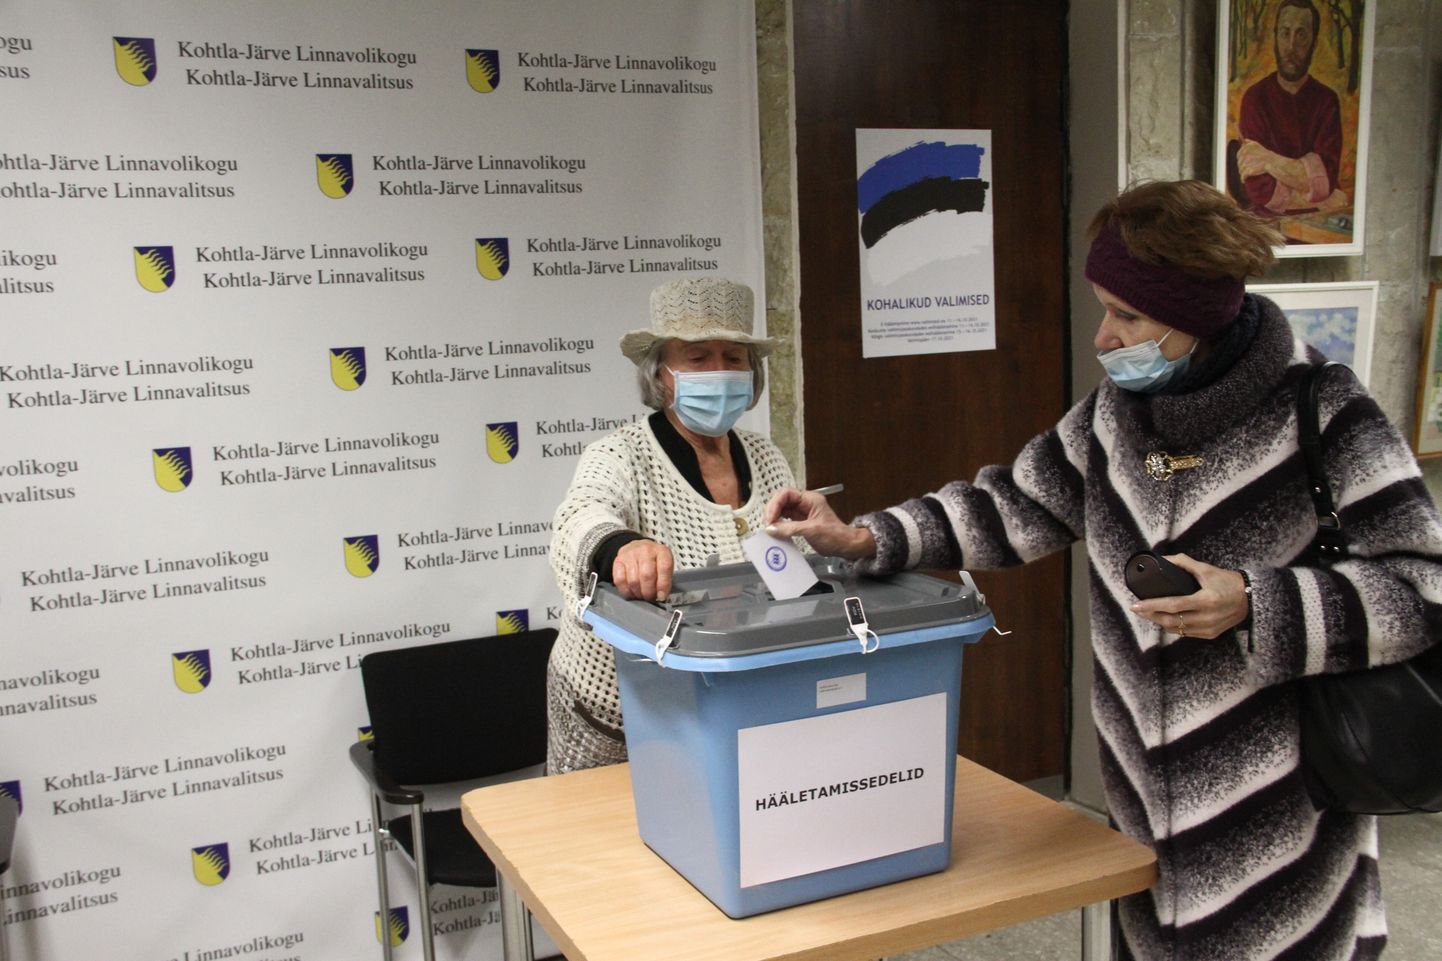 Жительница Кохтла-Ярве голосует в избирательном участке, расположенном в холле здания городского управления.